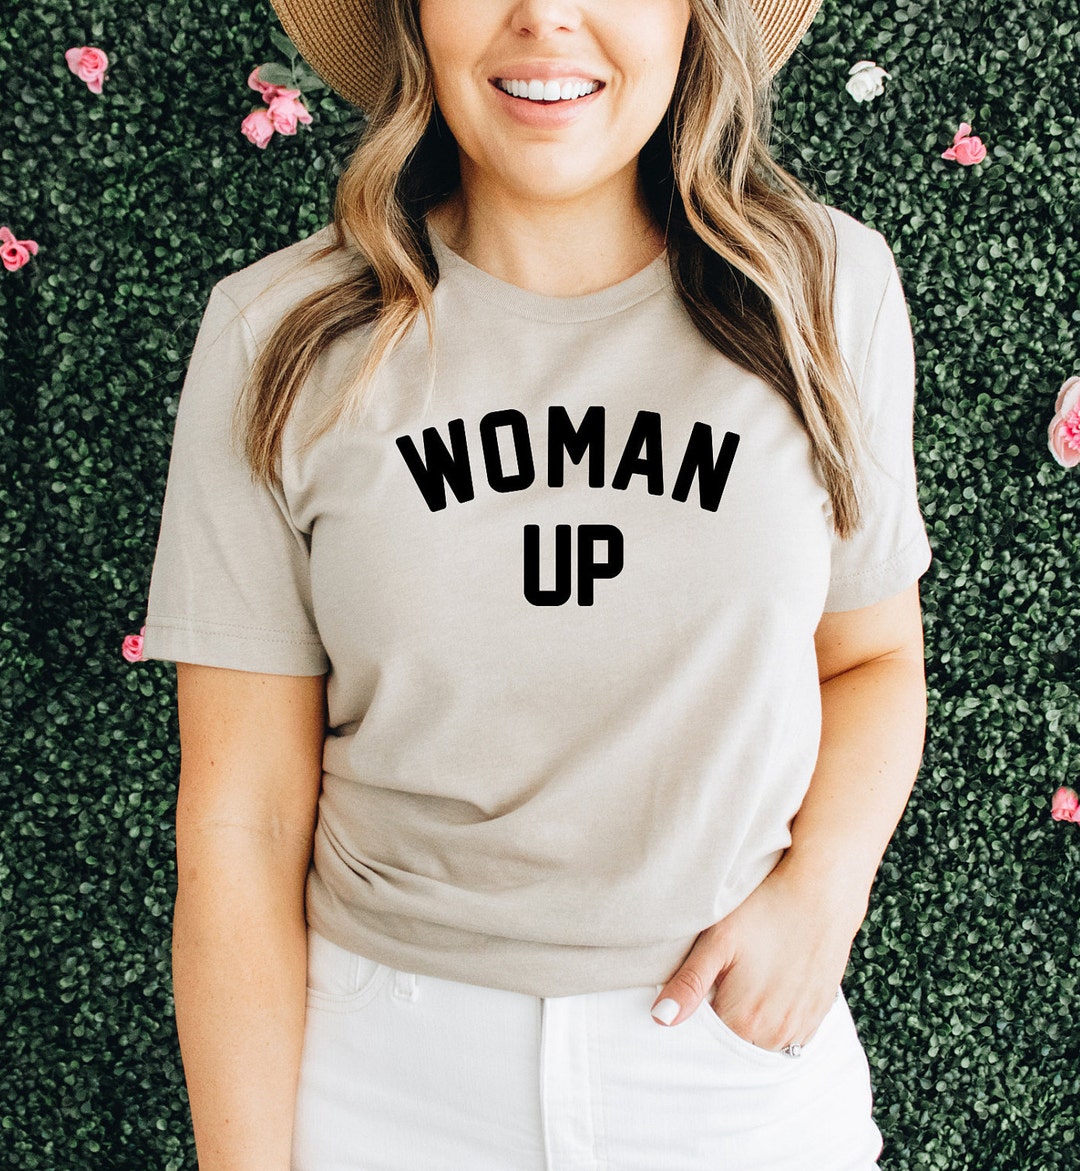 Woman up T-shirt Feminist Woman up Shirt Strong Woman Shirt Girl Power ...